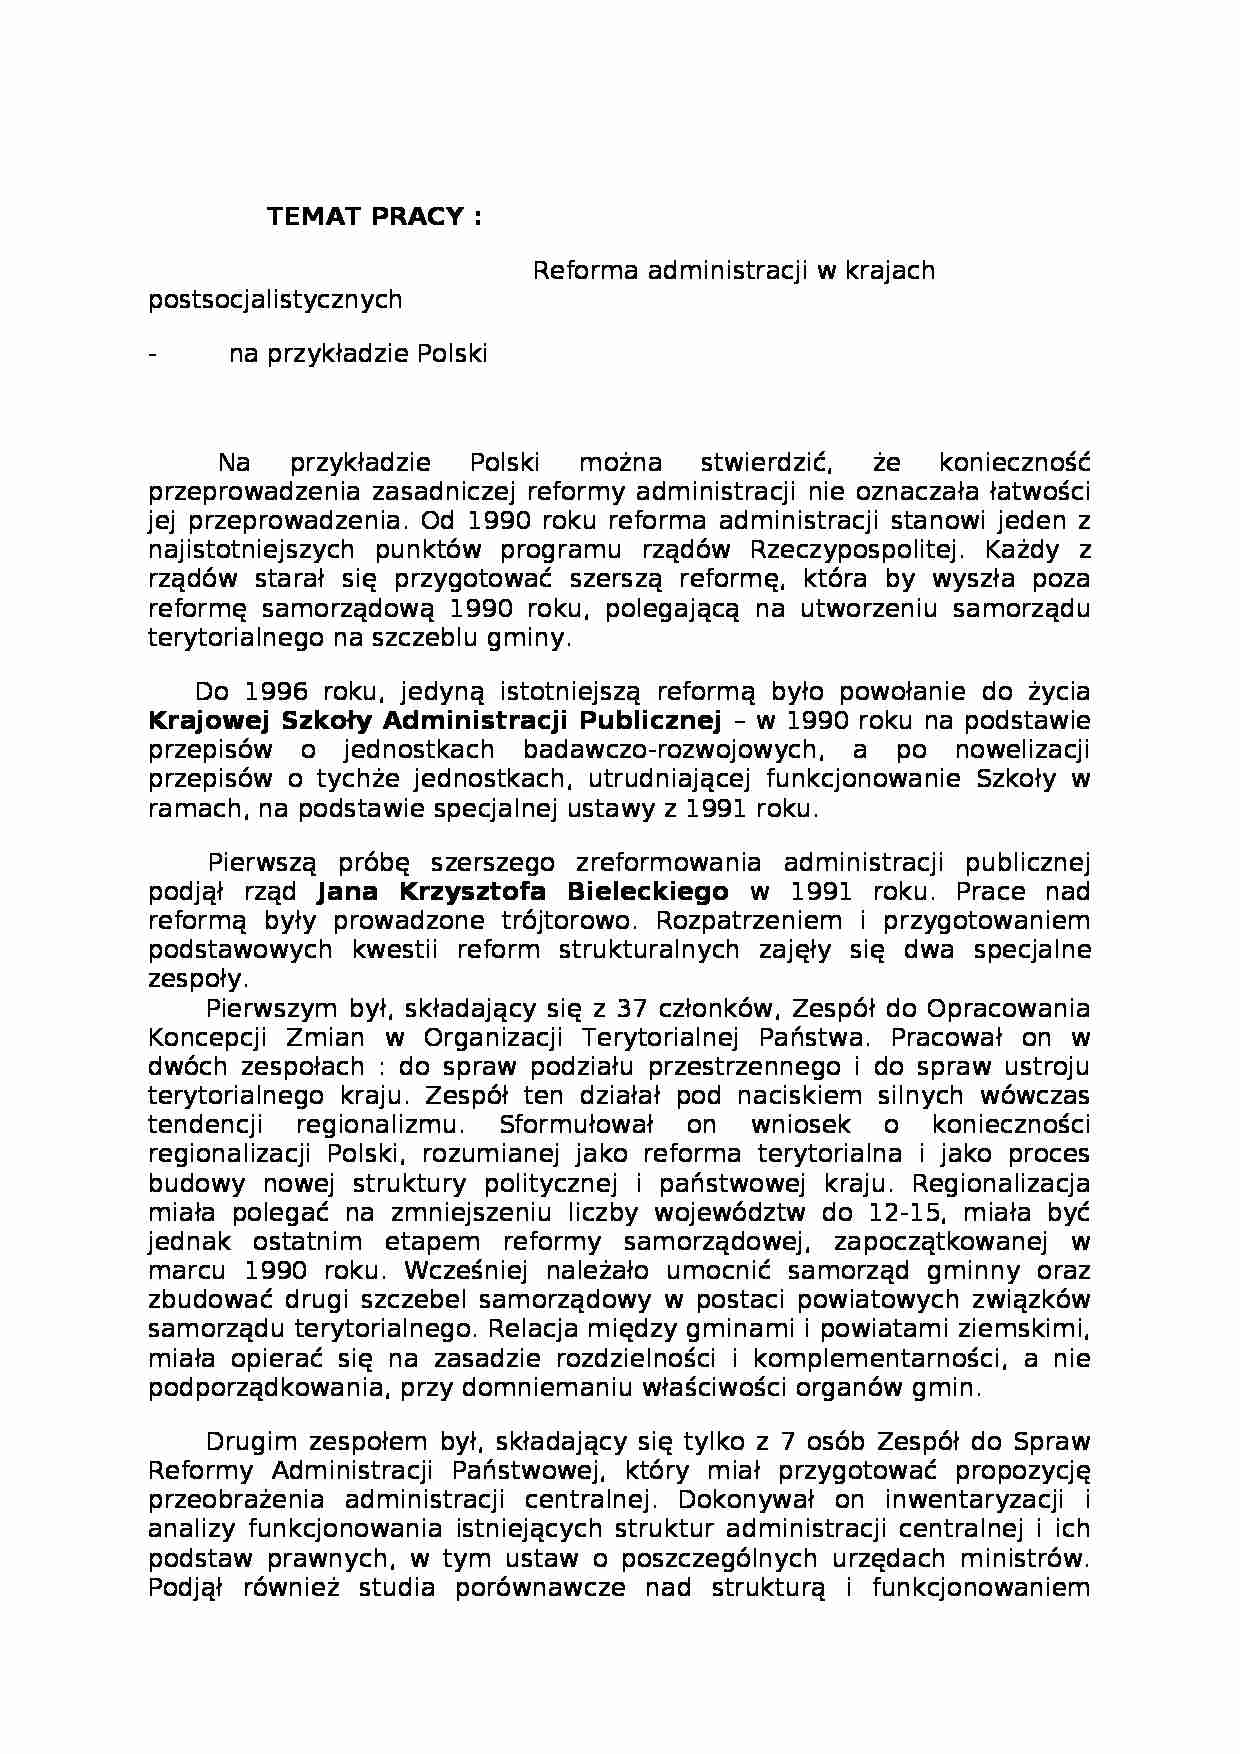 Reforma administracji w krajach postsocjalistycznych - na przykładzie Polski - strona 1